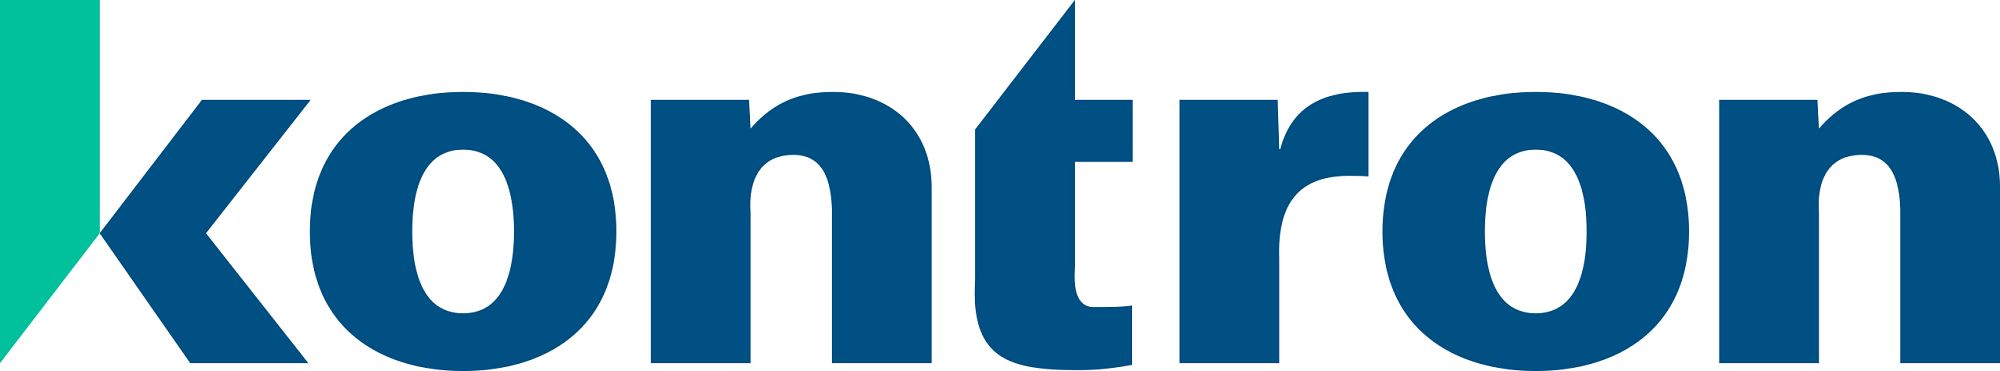 Kontron Austria GmbH_logo